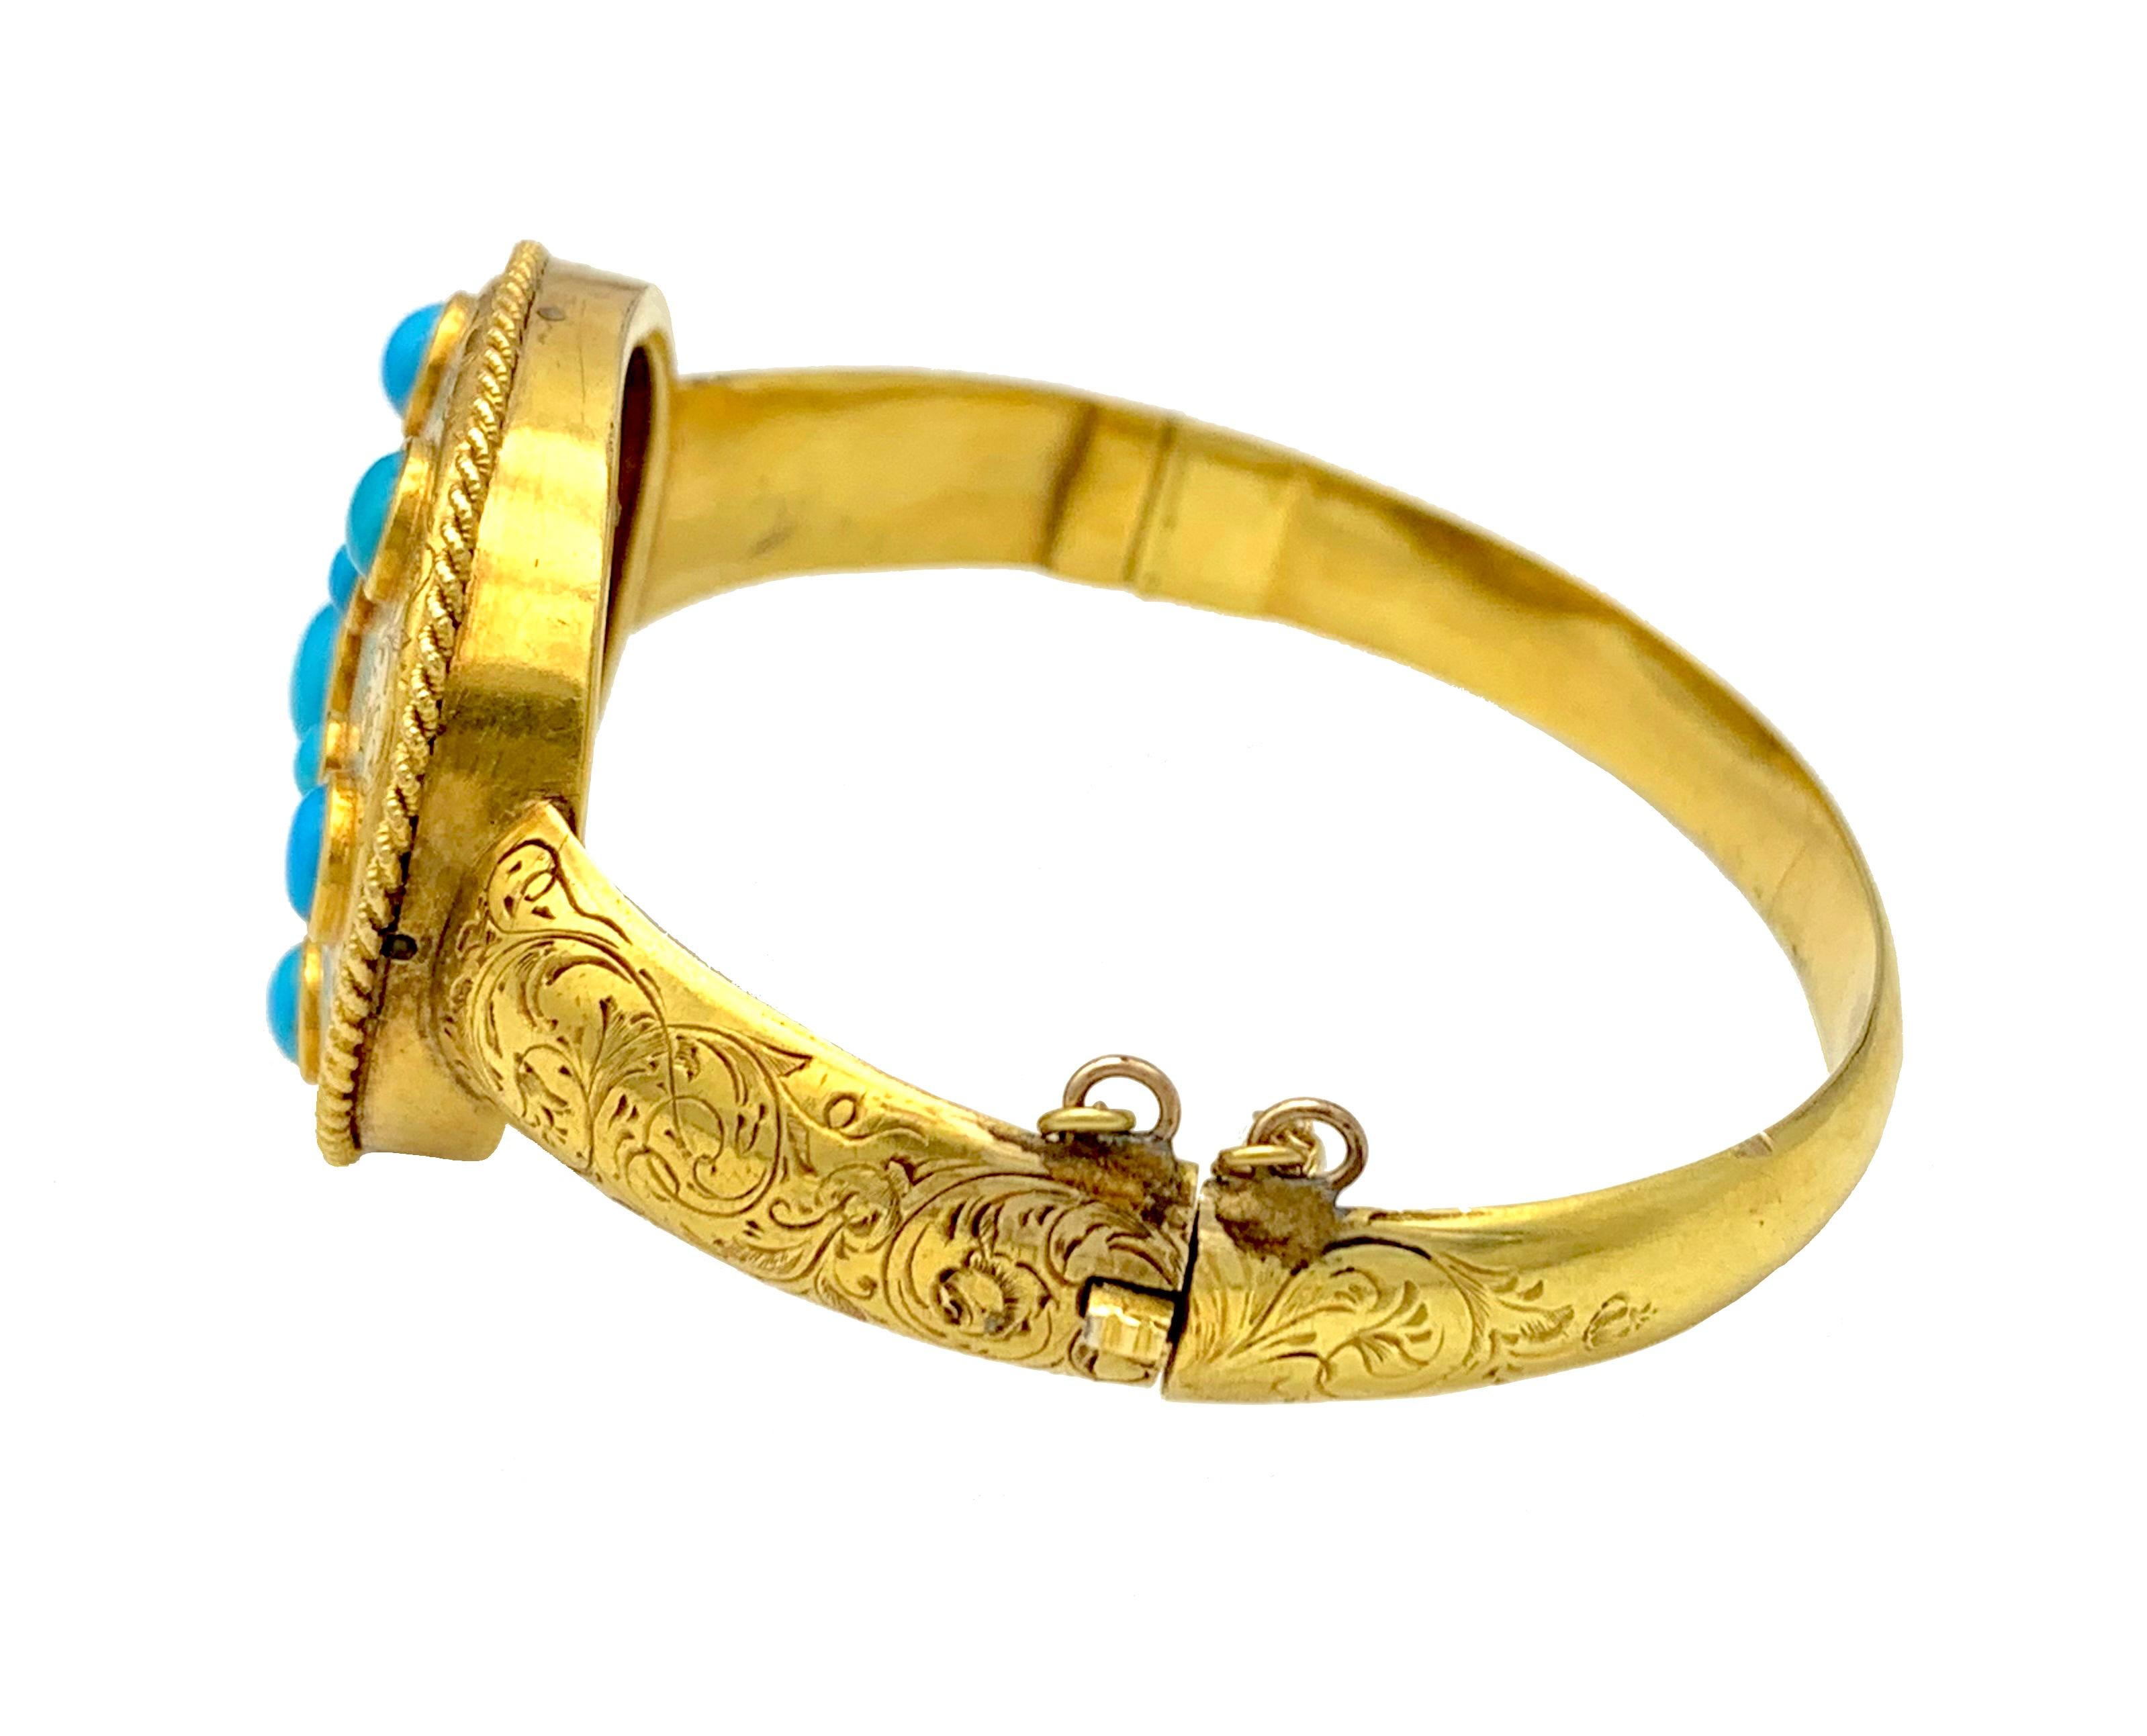 Dieser exquisite Goldarmreif zeigt einen Stern aus einem feinen Türkiscabochon in einer ovalen Umrandung, die von einem gedrehten Golddraht umrahmt ist. Der Armreif ist mit einer feinen Handgravur verziert. Das Schmuckstück wurde 1845 hergestellt